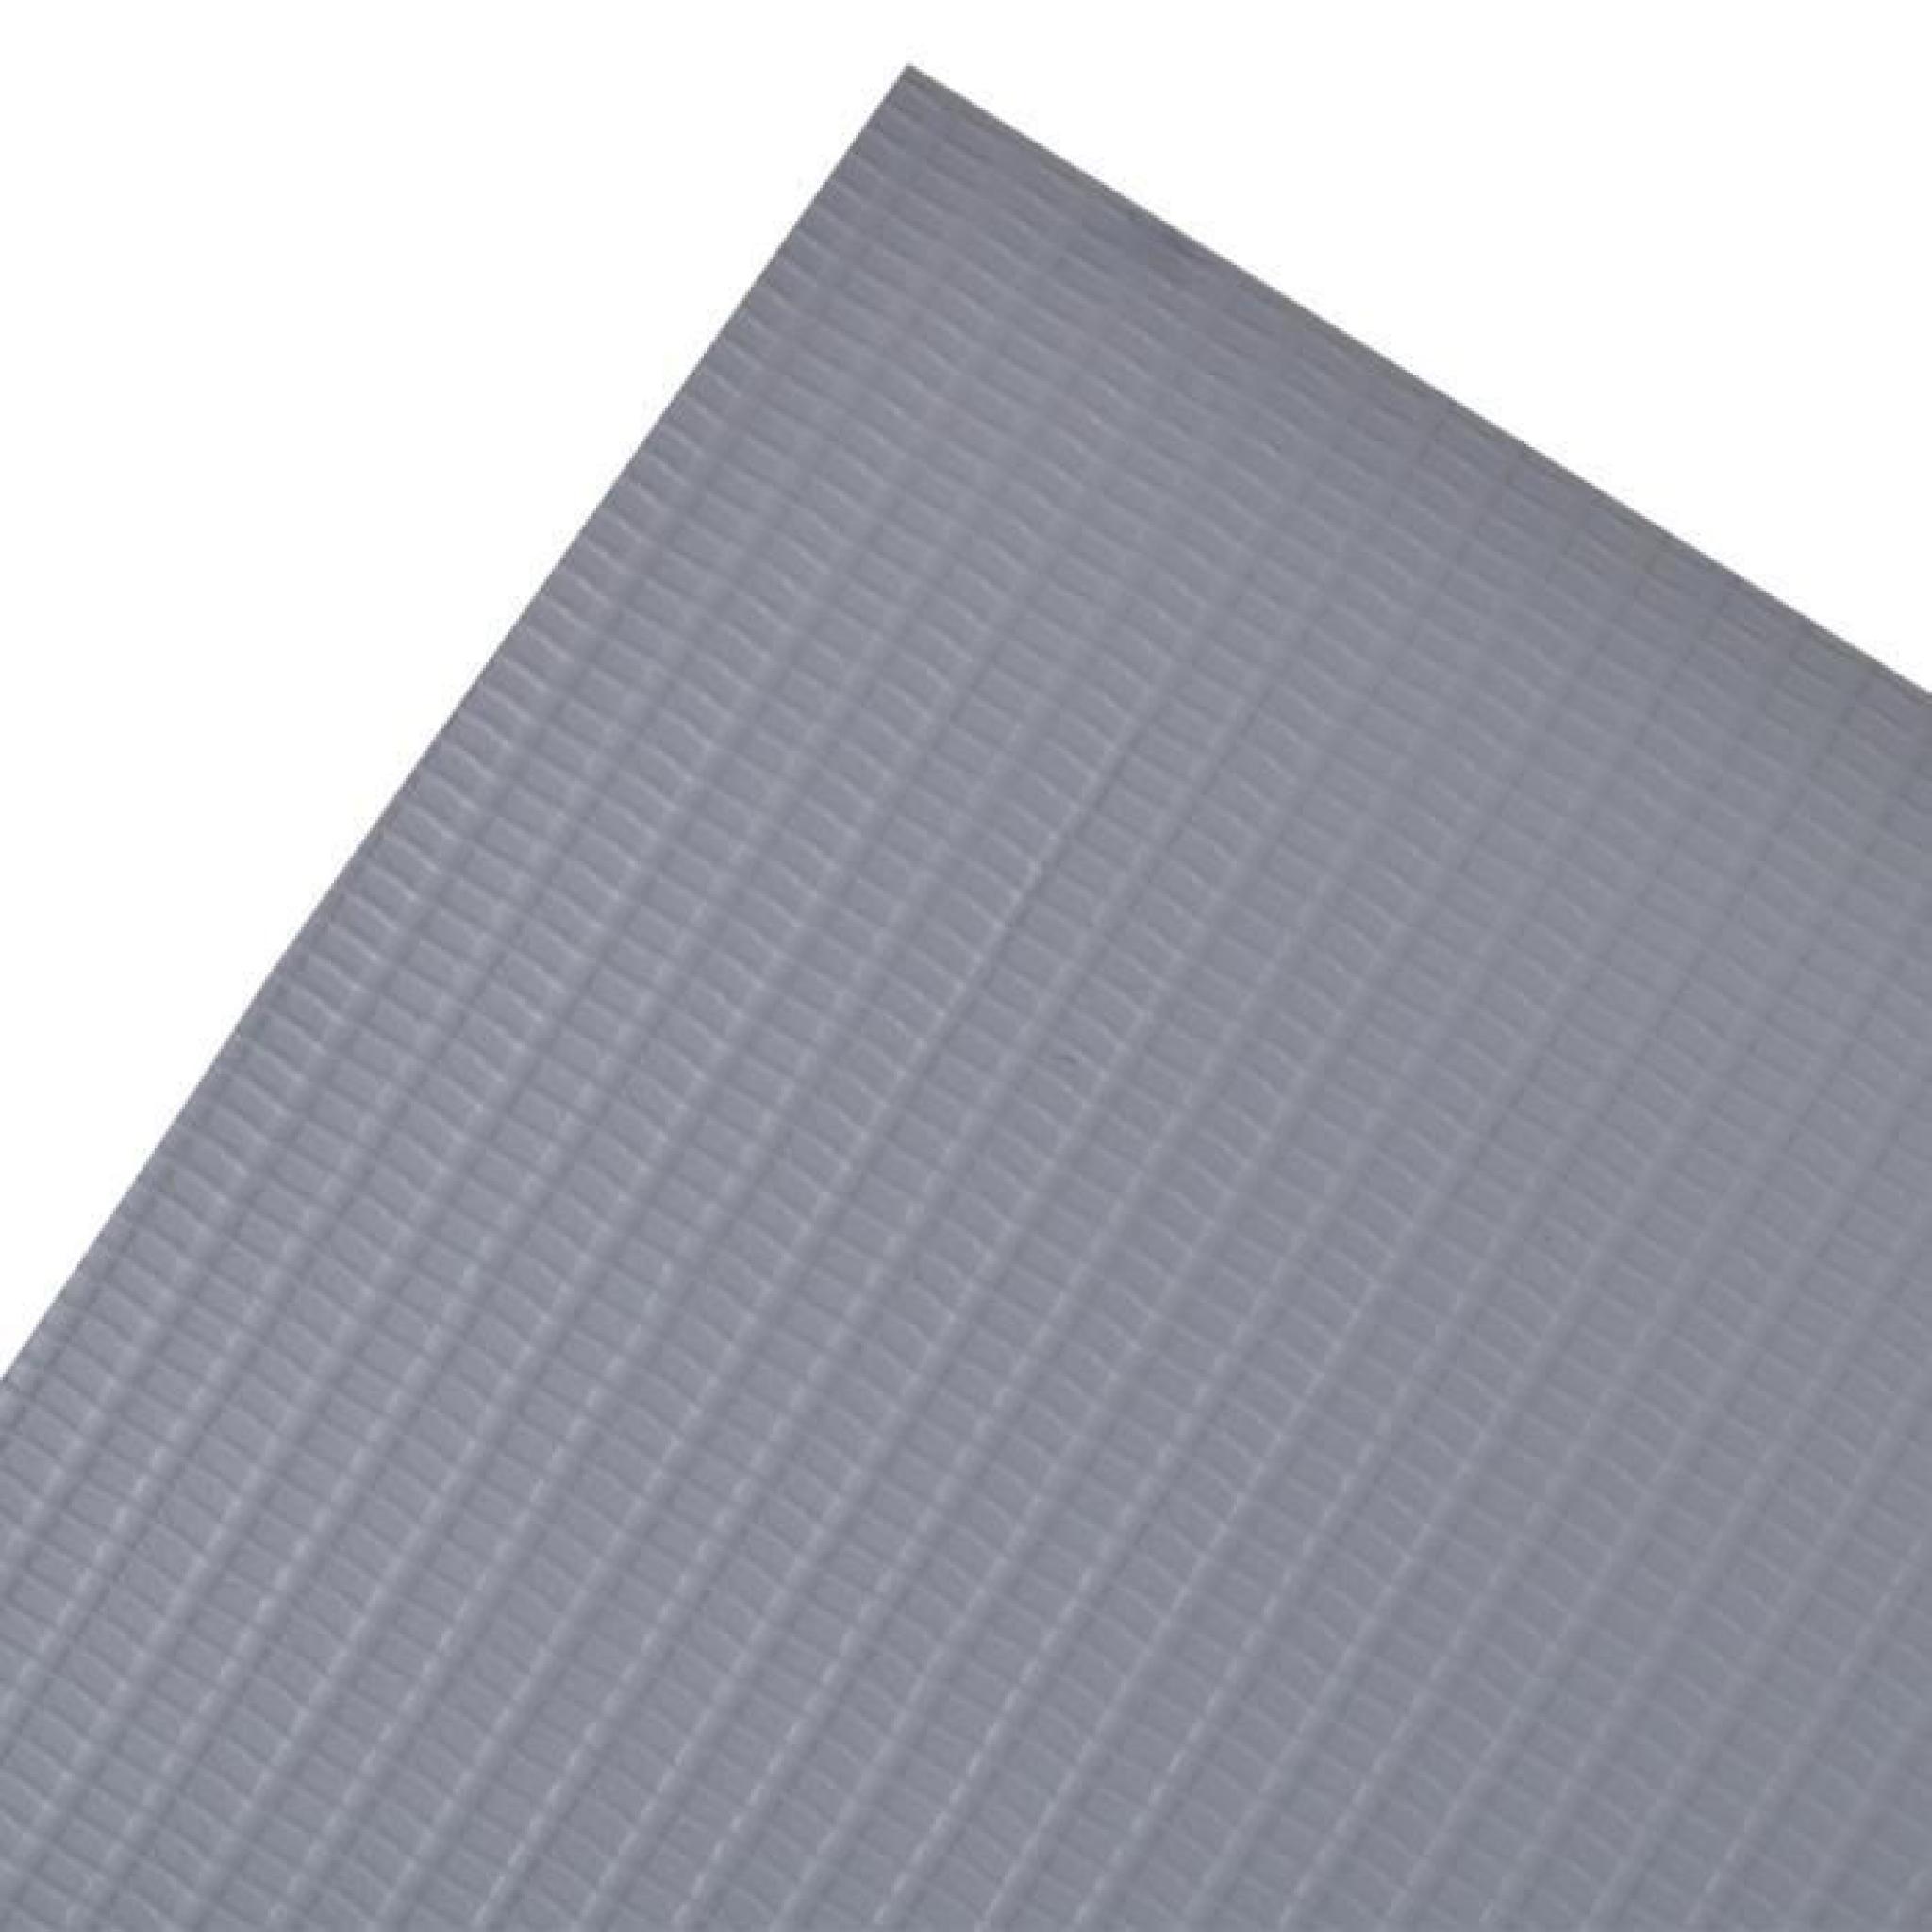 Brise-vue pour clôture en PVC gris clair en rouleau 70 x 0,19 m pas cher